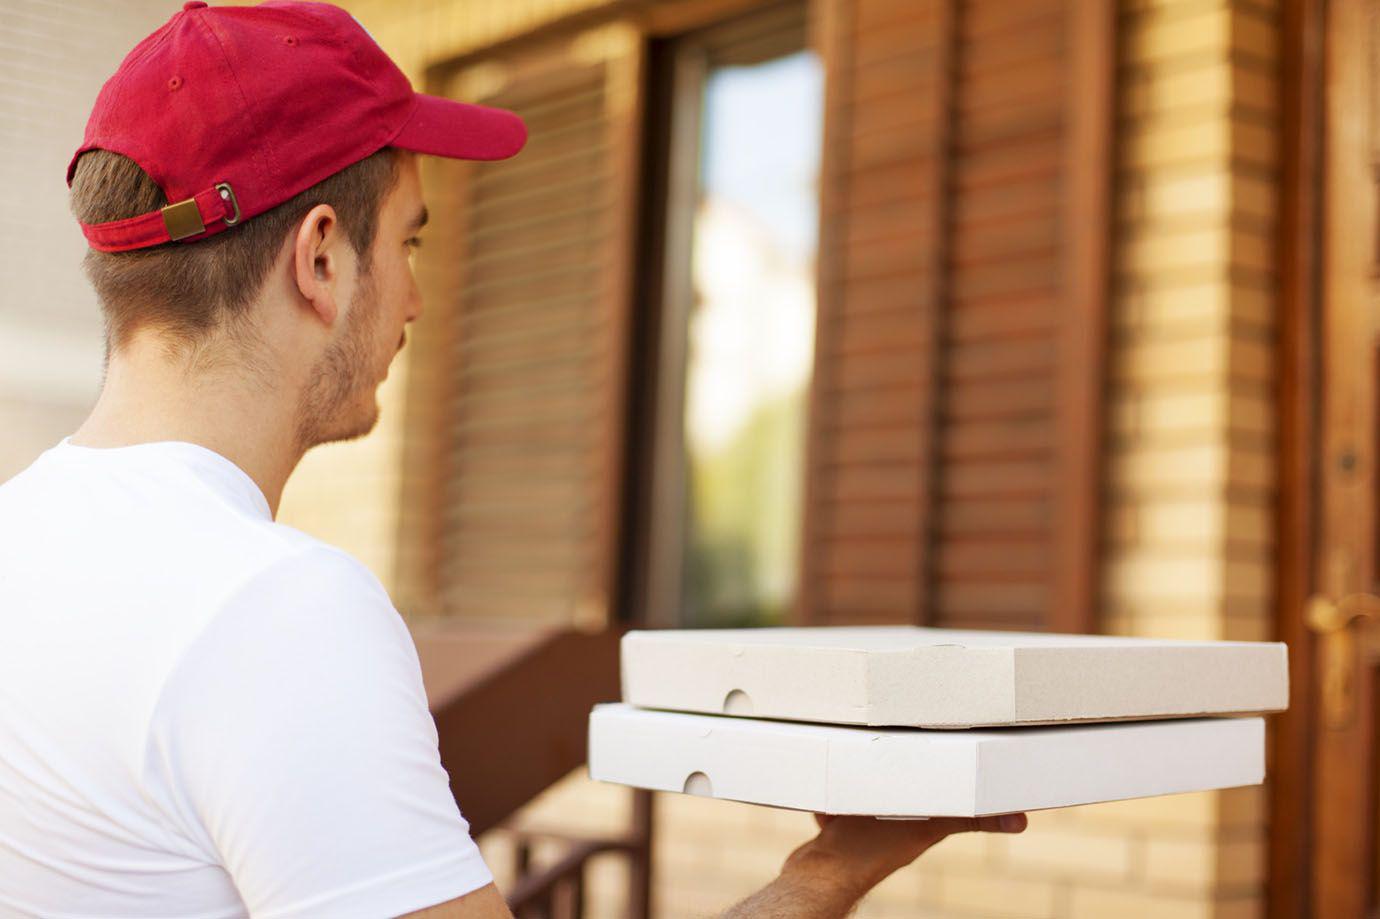 La pesadilla de un hombre que recibe pizzas que nunca pidioacute hace maacutes de 10 antildeos